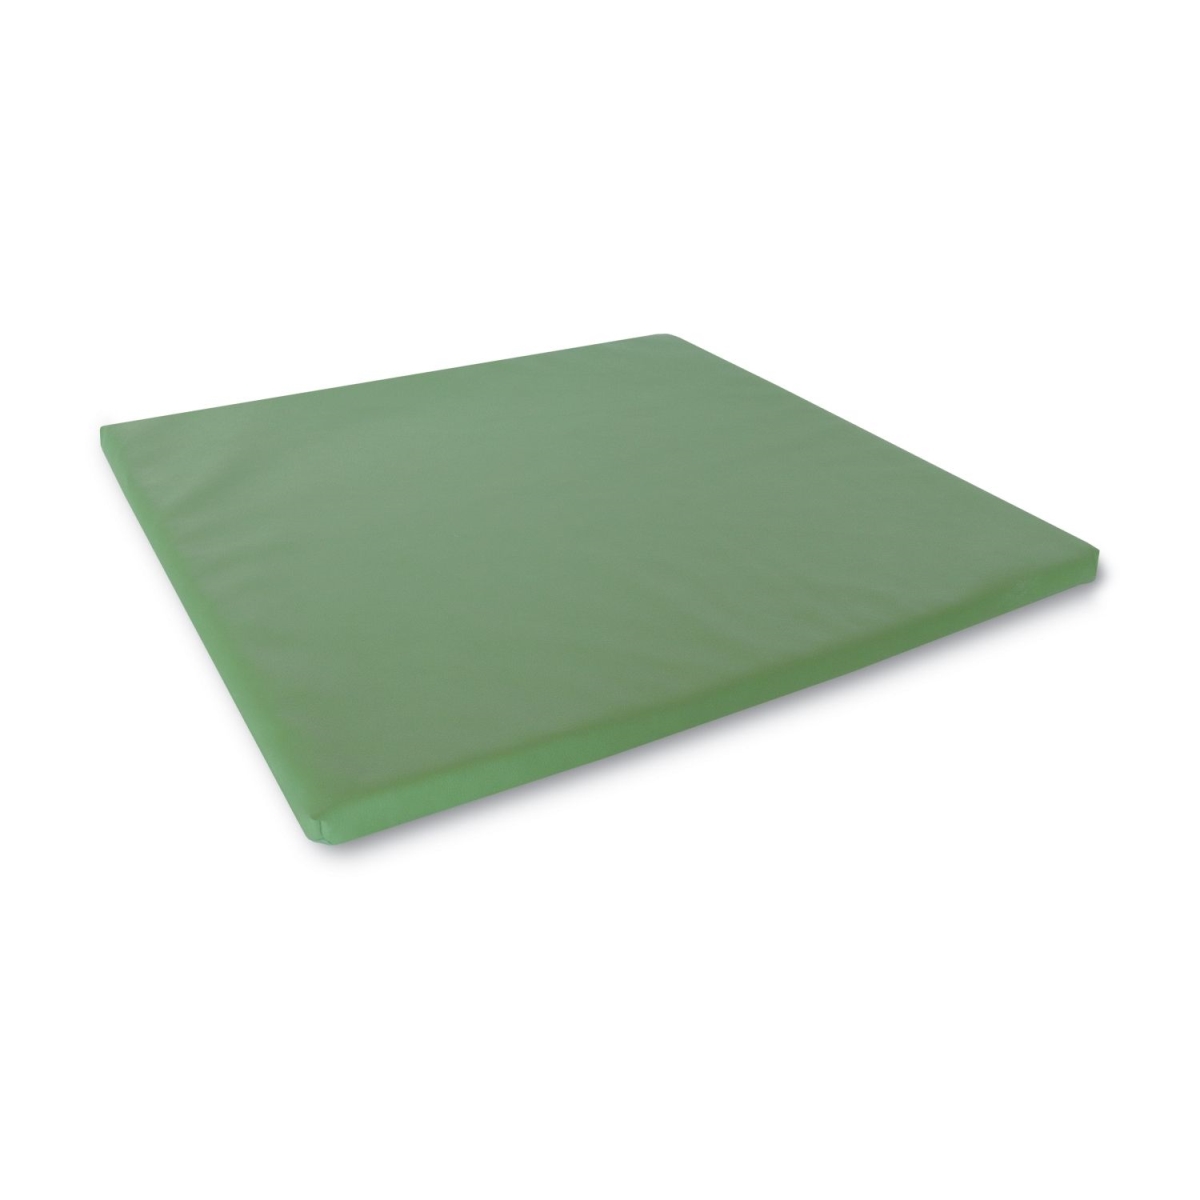 Green Floor Mat 22.75 X 21.25 X 1